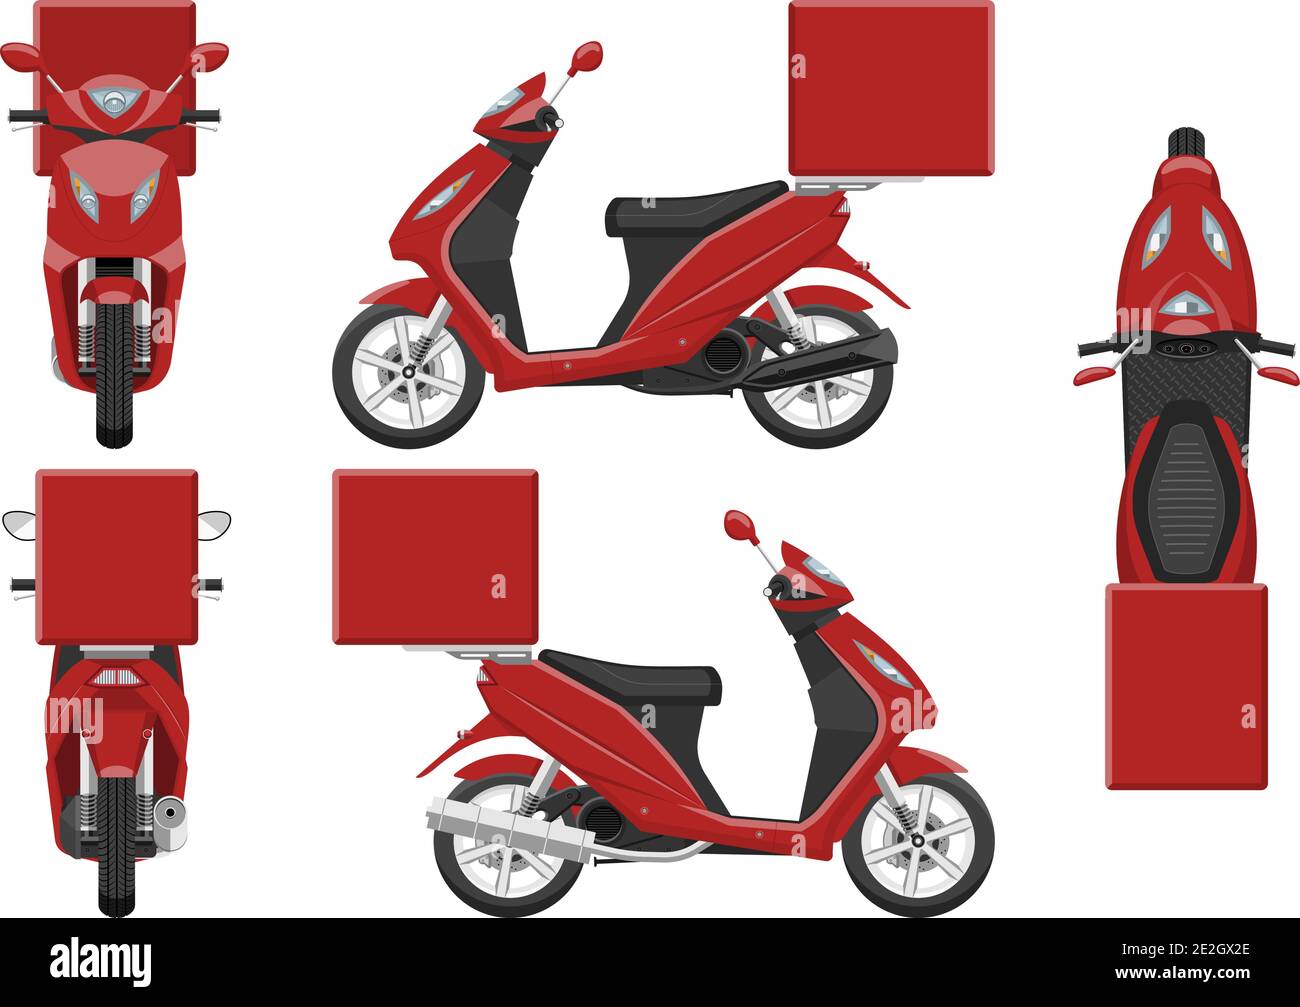 Modèle de vecteur de moto de livraison rouge avec des couleurs simples sans dégradés ni effets. Vue latérale, avant, arrière et supérieure Illustration de Vecteur